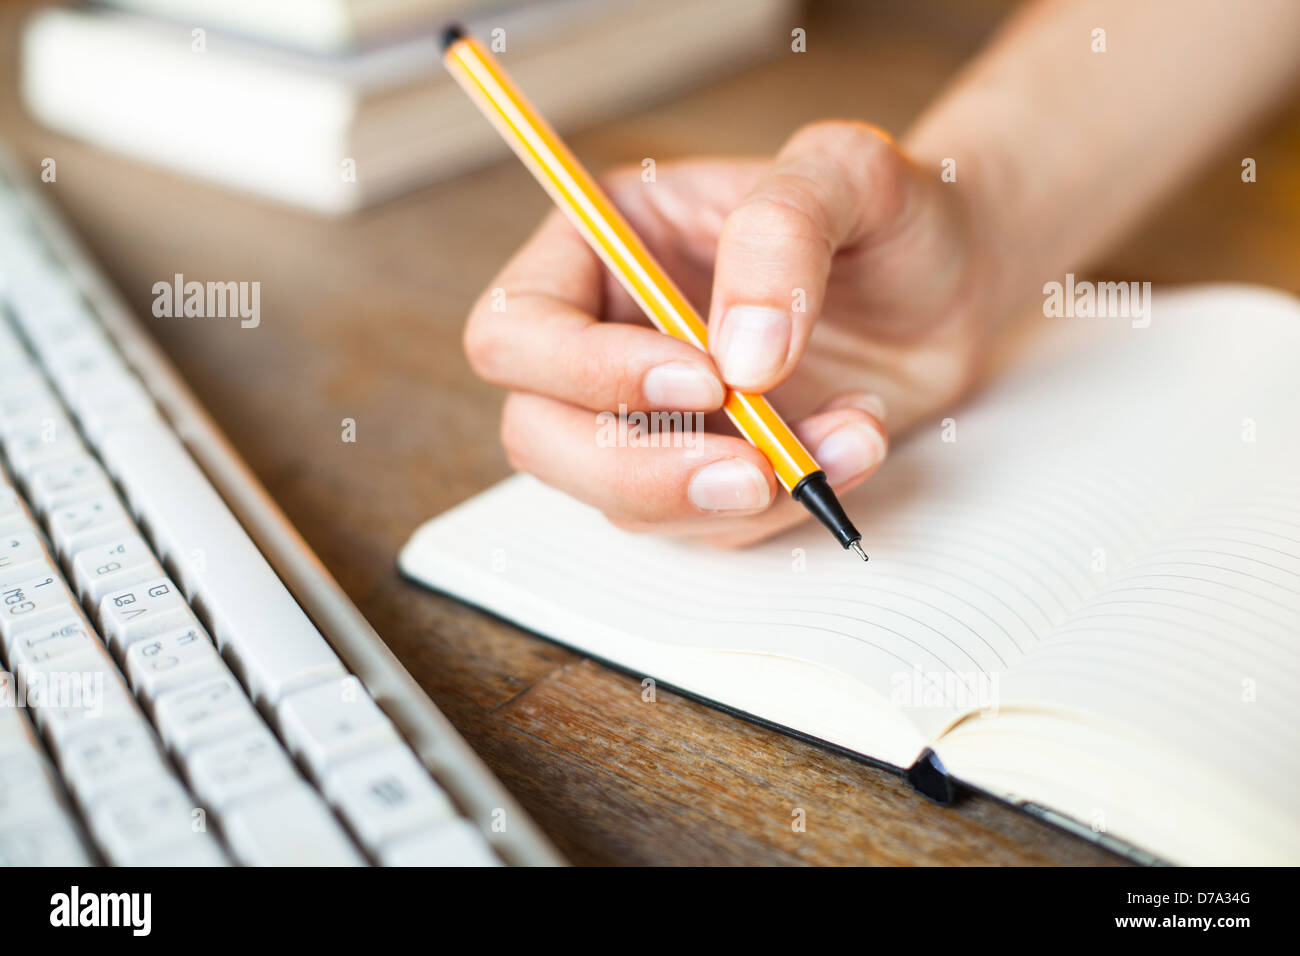 Mains écrit un stylo dans un ordinateur portable, clavier de l'ordinateur et une pile de livres en arrière-plan. Banque D'Images